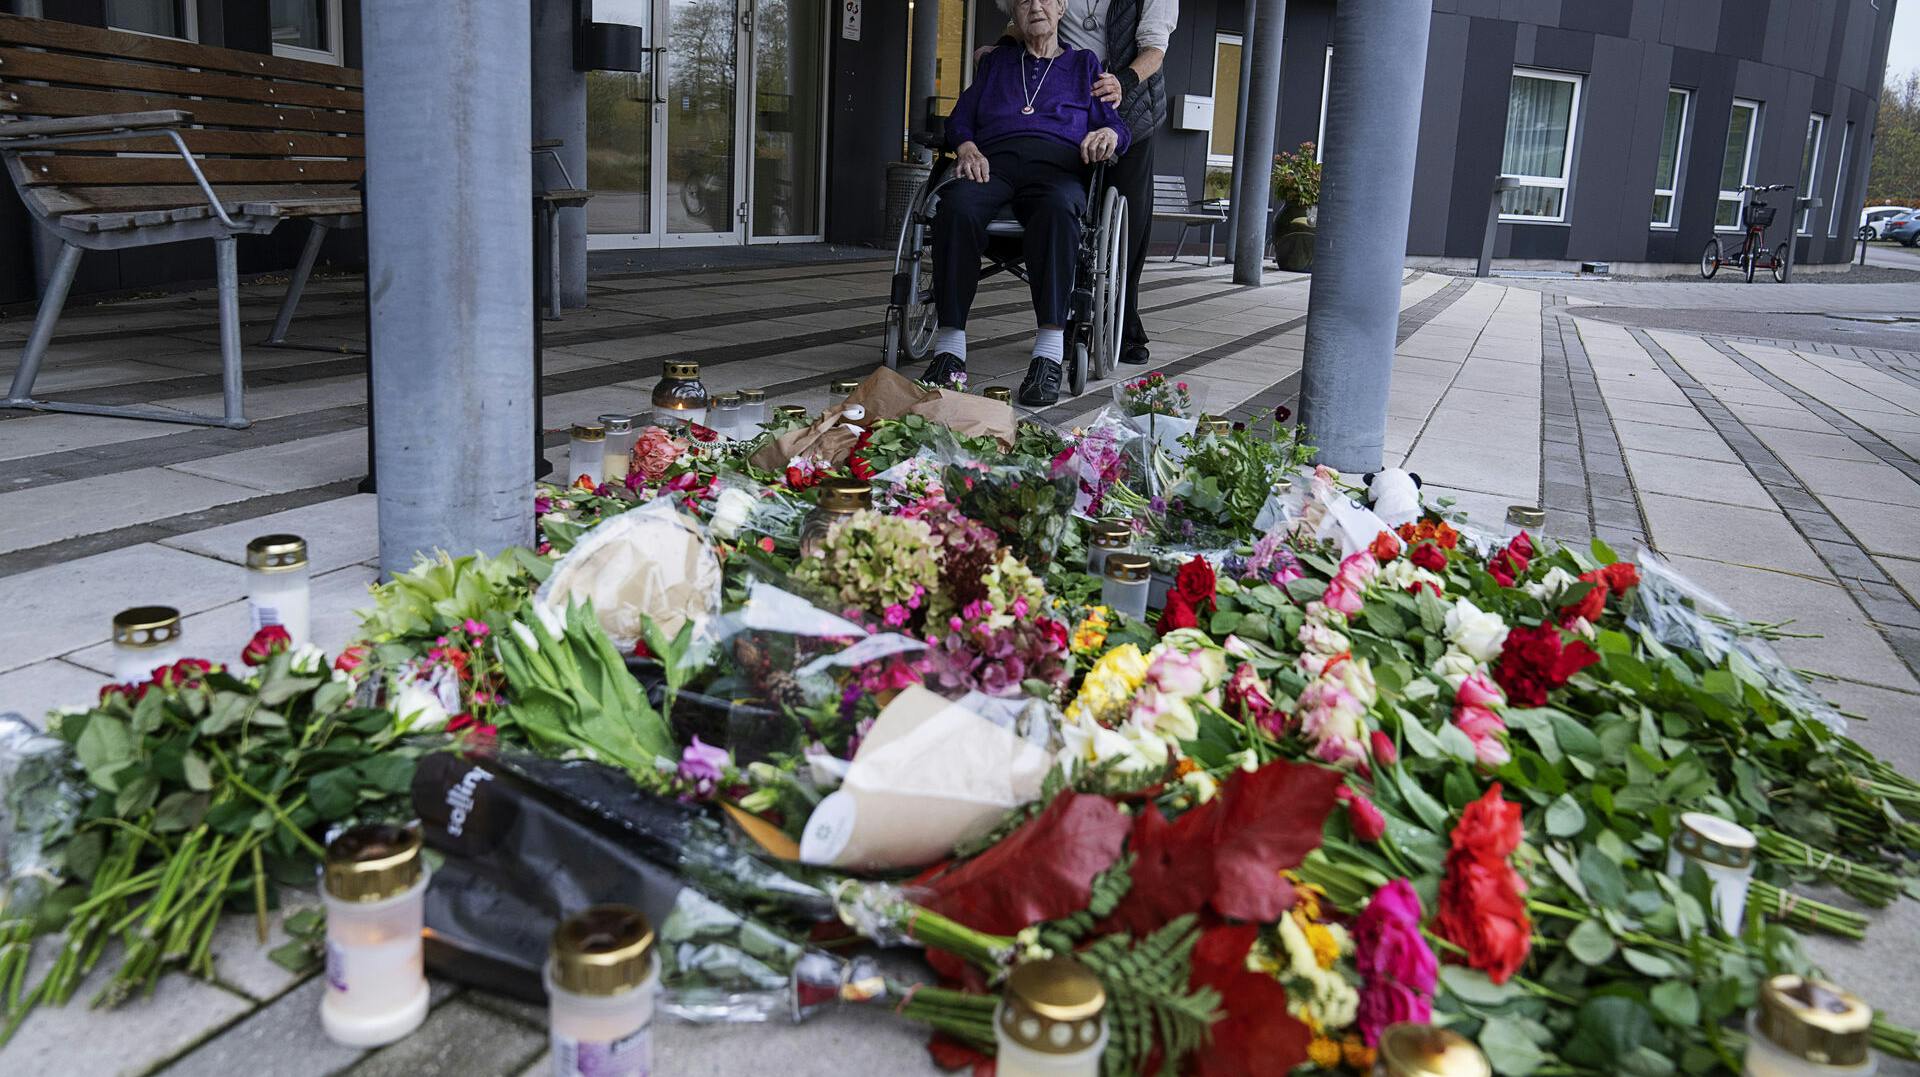 Blomster og lys til minde om dræbt 37-årig gravid kvinde, foran Plejecenter Samsøvej i Holbæk, søndag den 6. november 2022. Den myrdede gravide kvinde, som var afghansk statsborger, var ansat på Plejecenter Samsøvej.